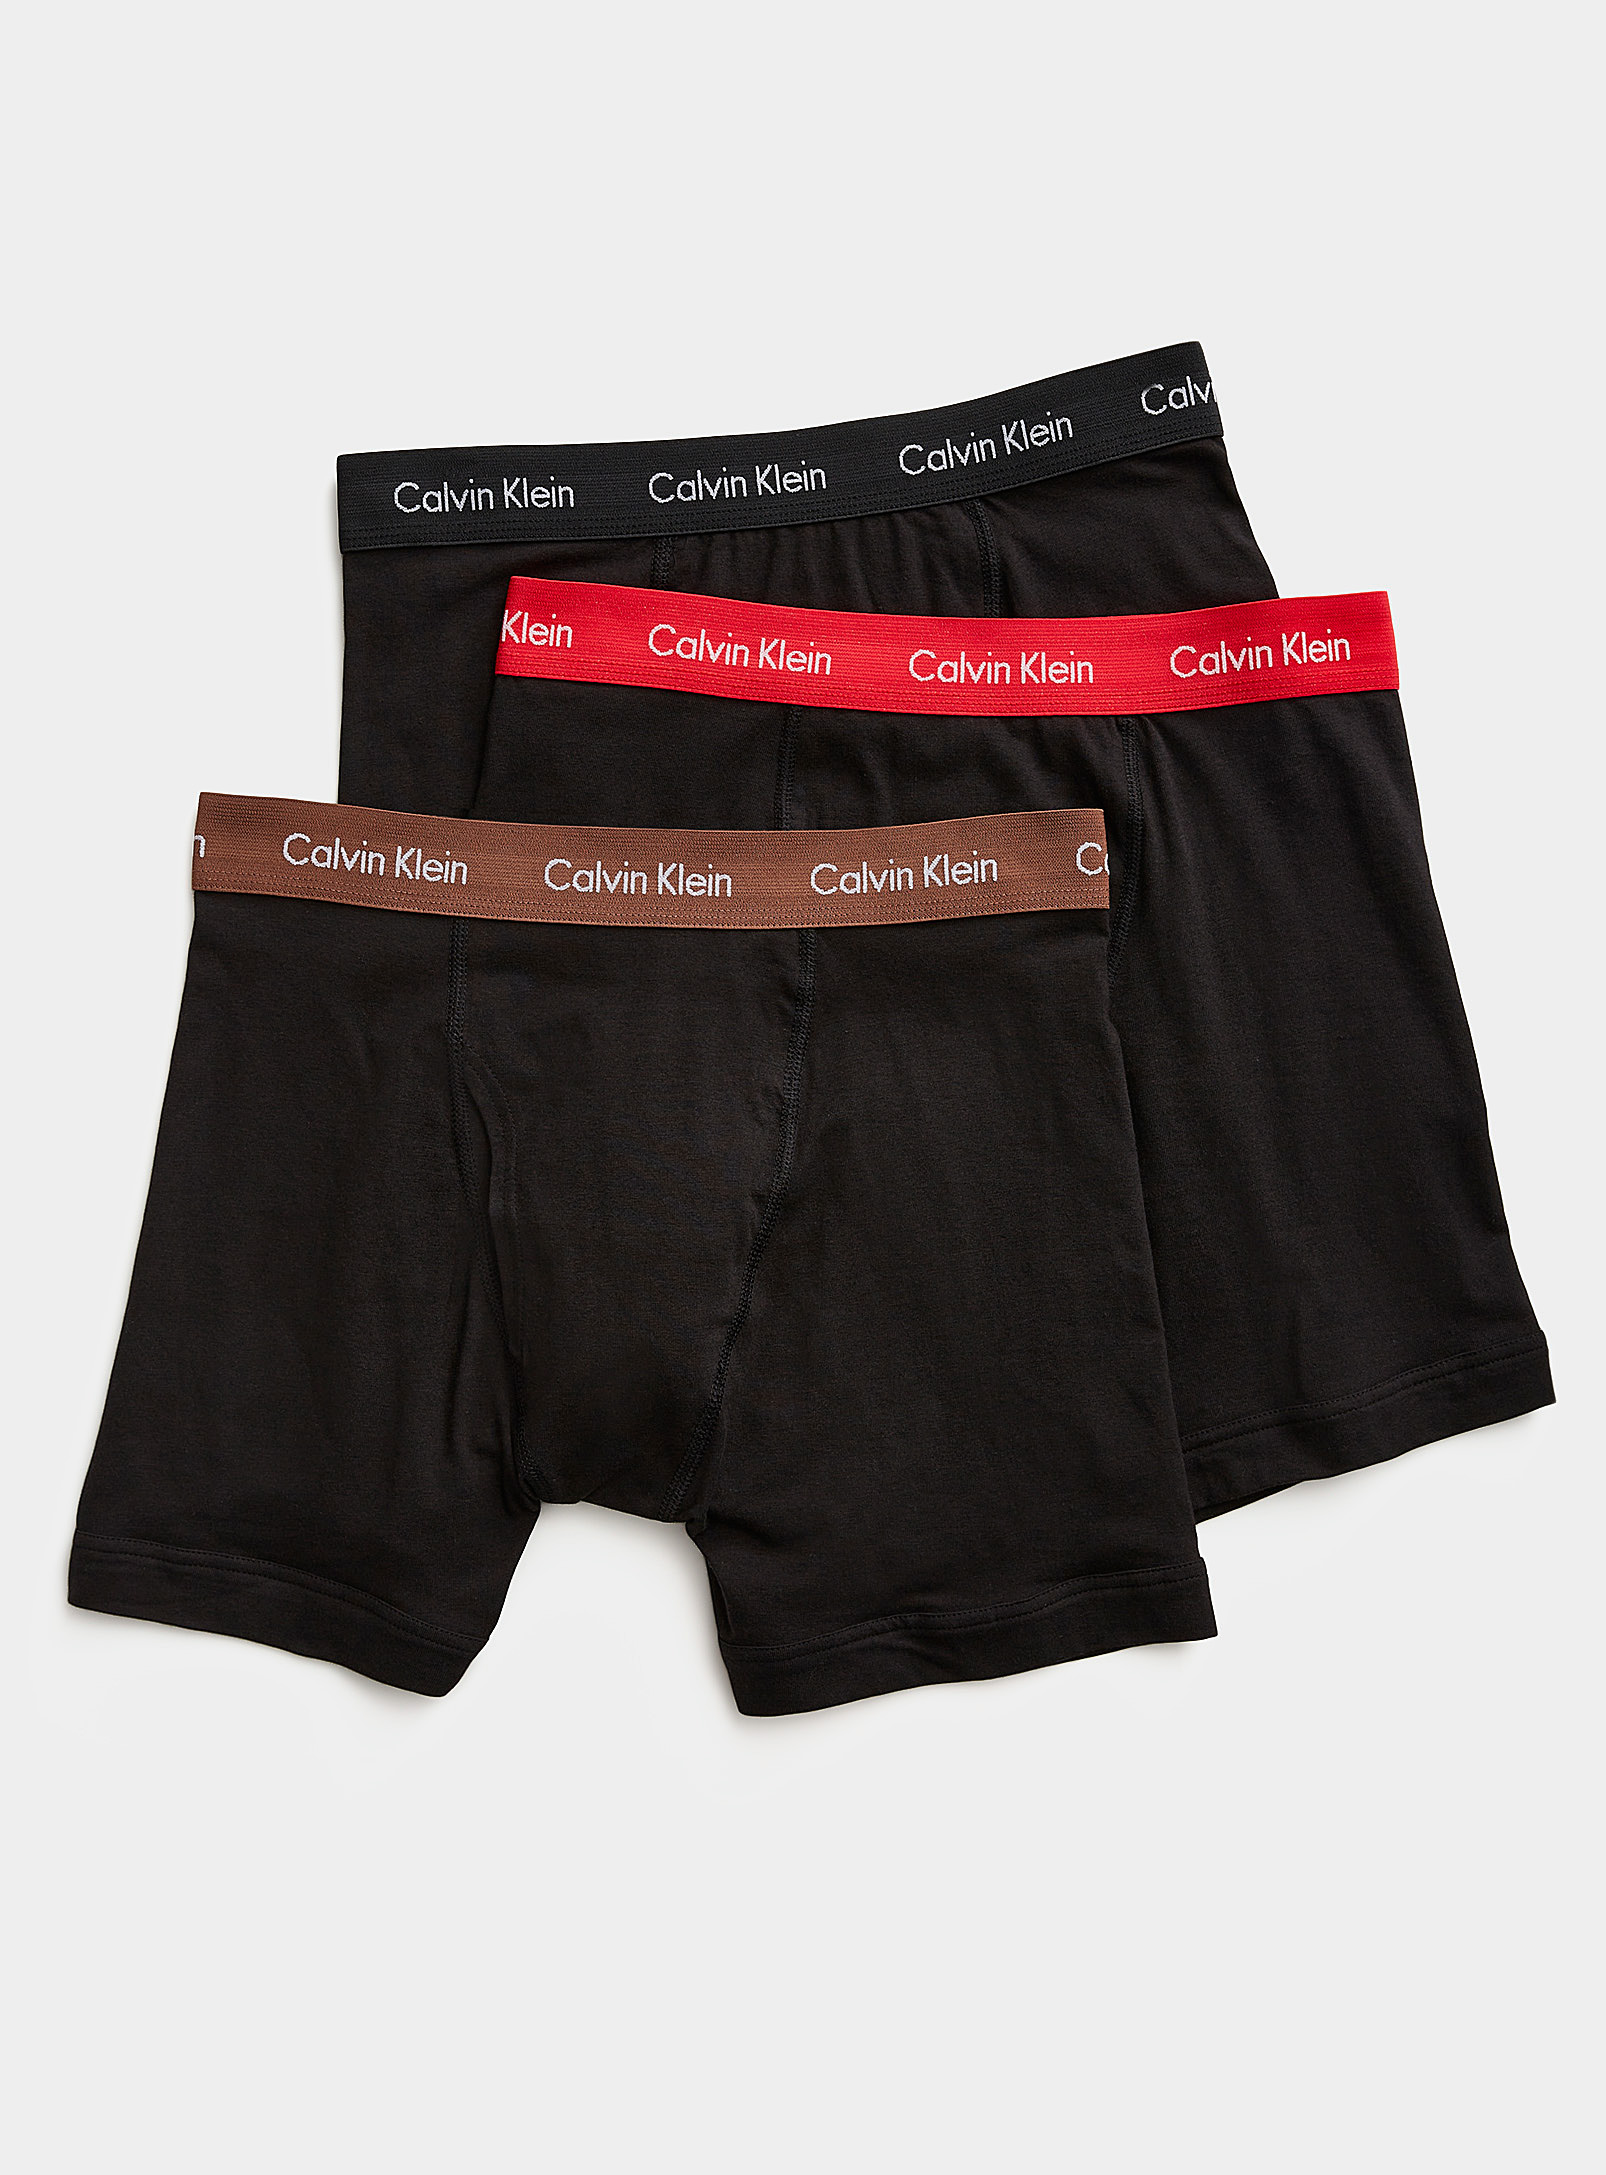 CCalvin Klein - Men's Cotton Stretch boxer briefs 3-pack